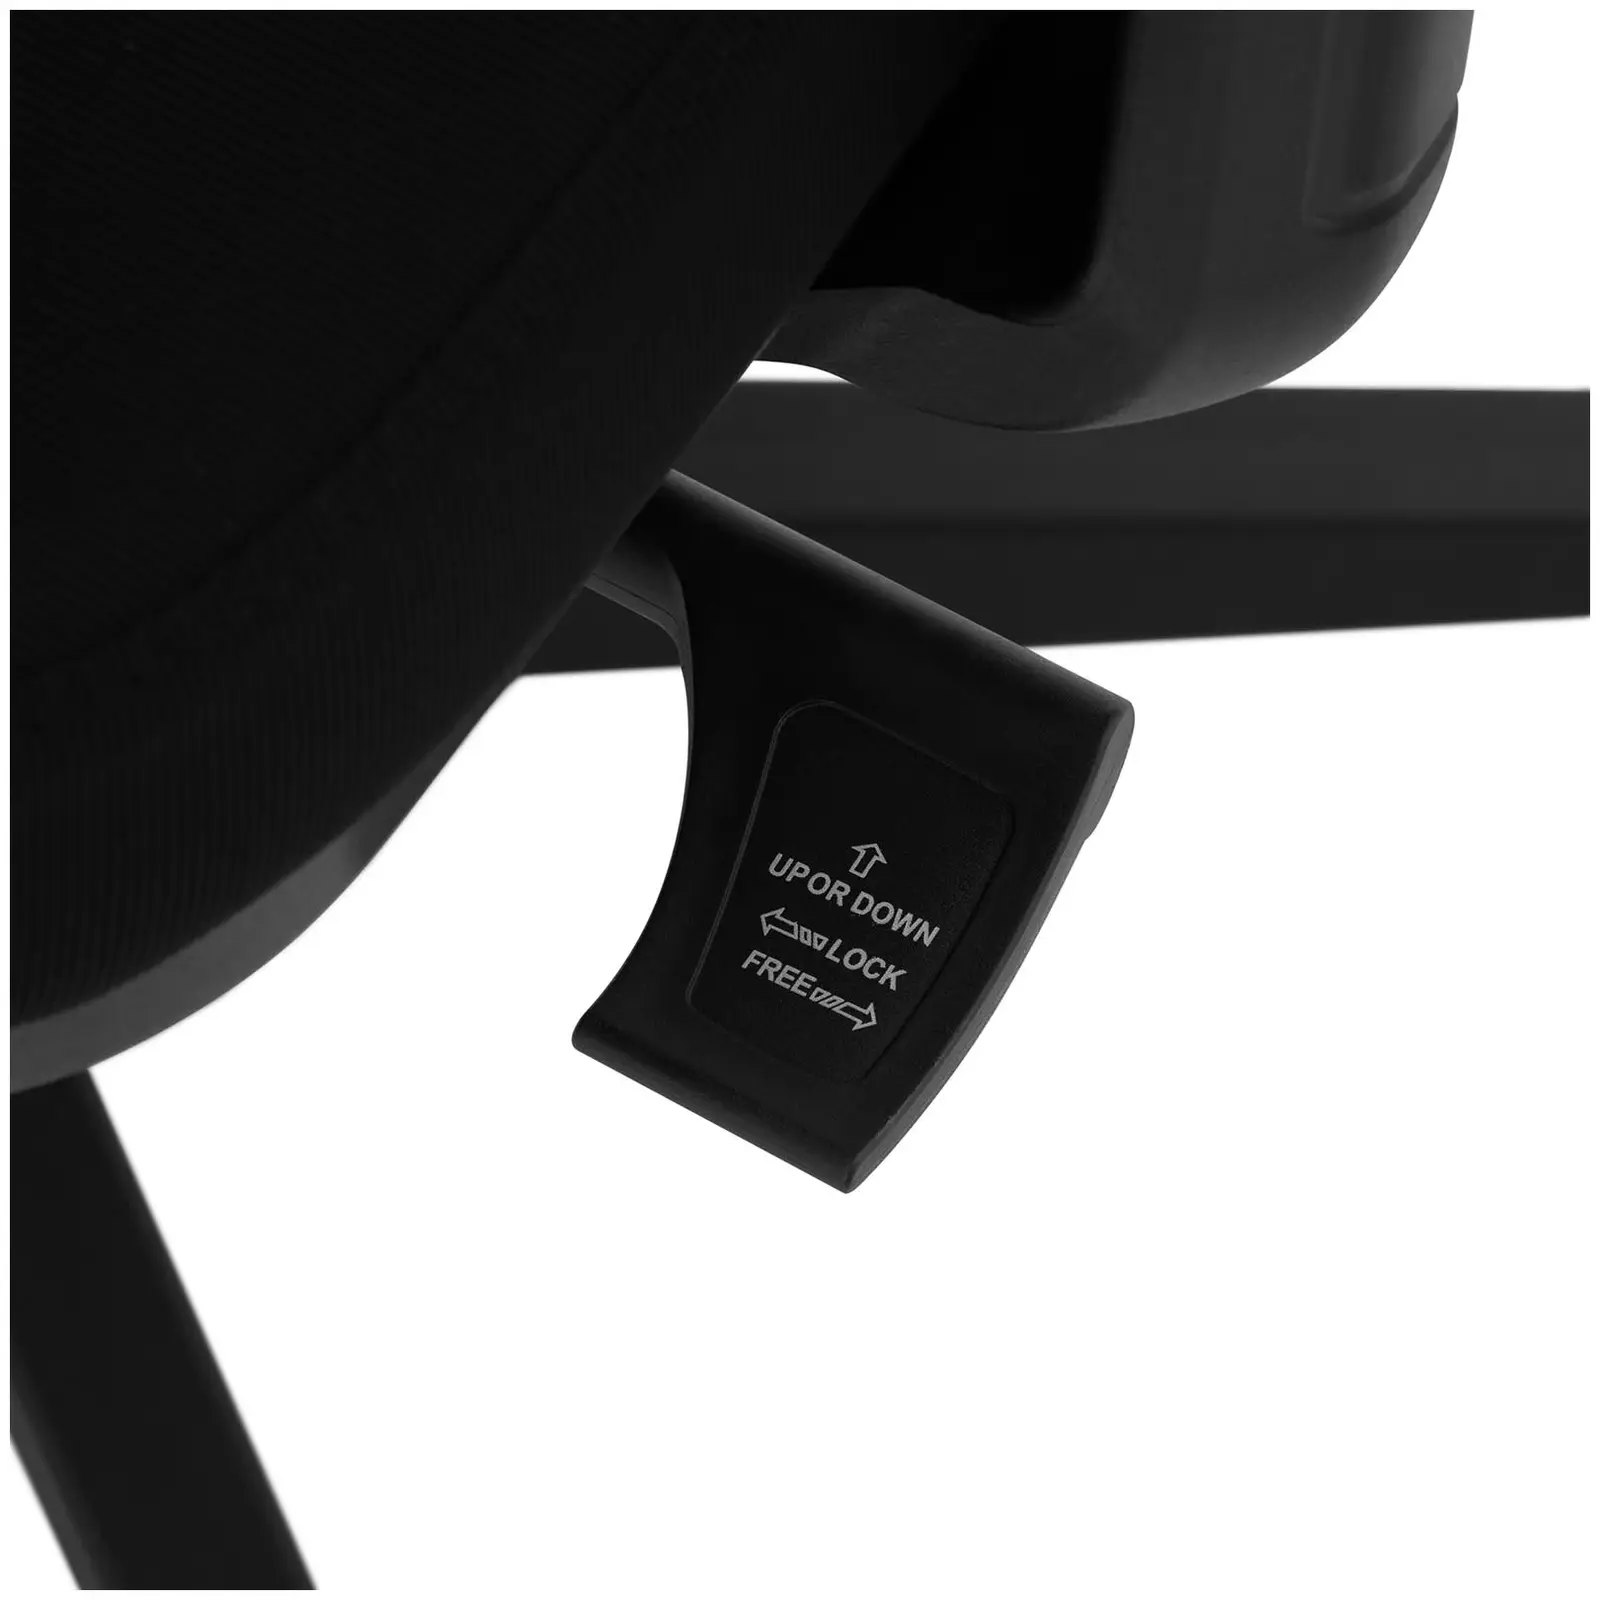 Chaise de bureau - dossier en filet - appuie-tête - siège de 50 x 50 cm - jusqu'à 150 kg - noir